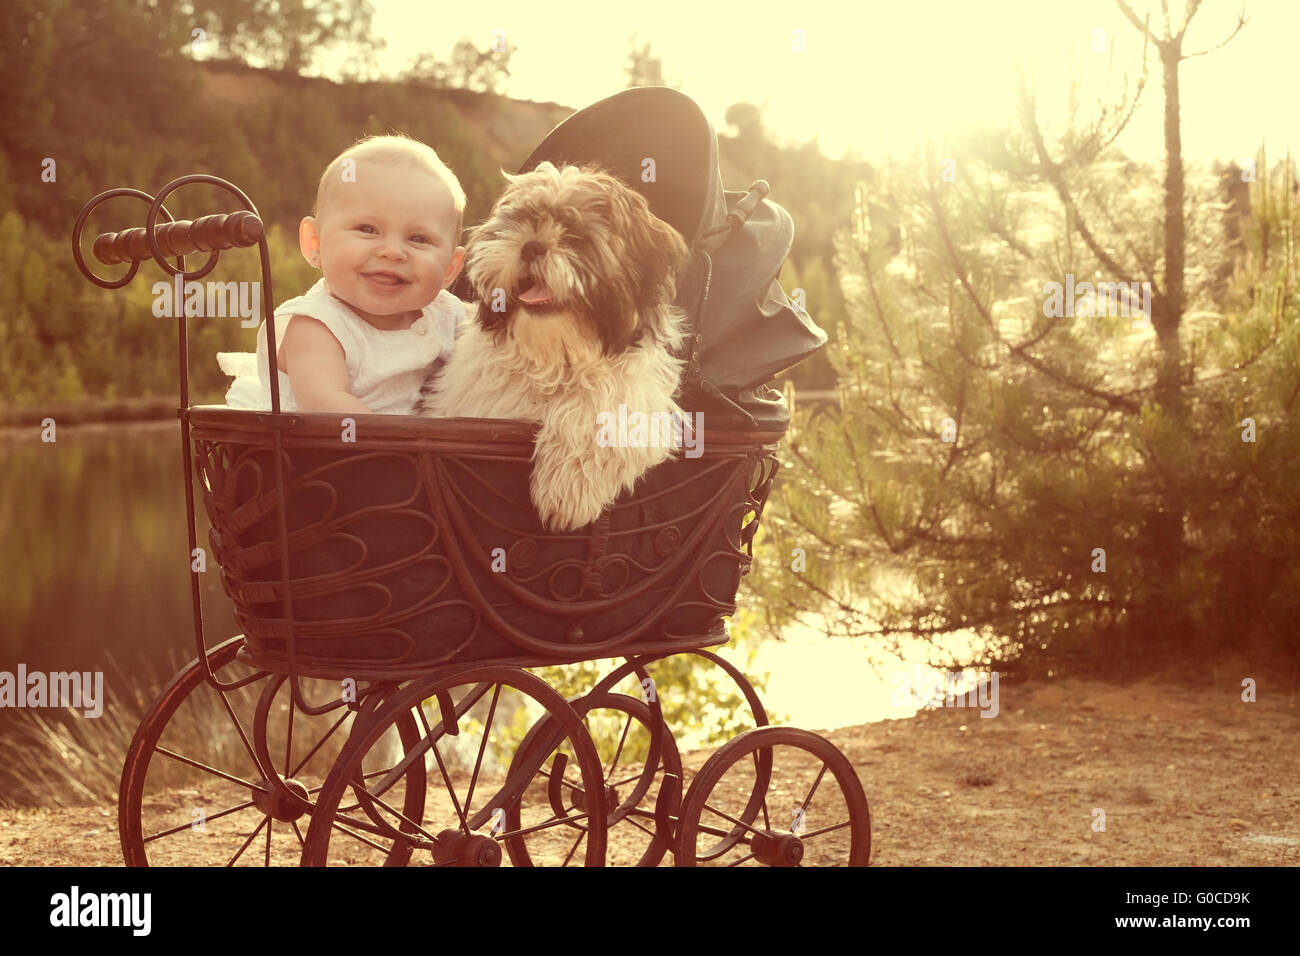 Baby Girl and puppy sont assis dans un pram vintage Banque D'Images